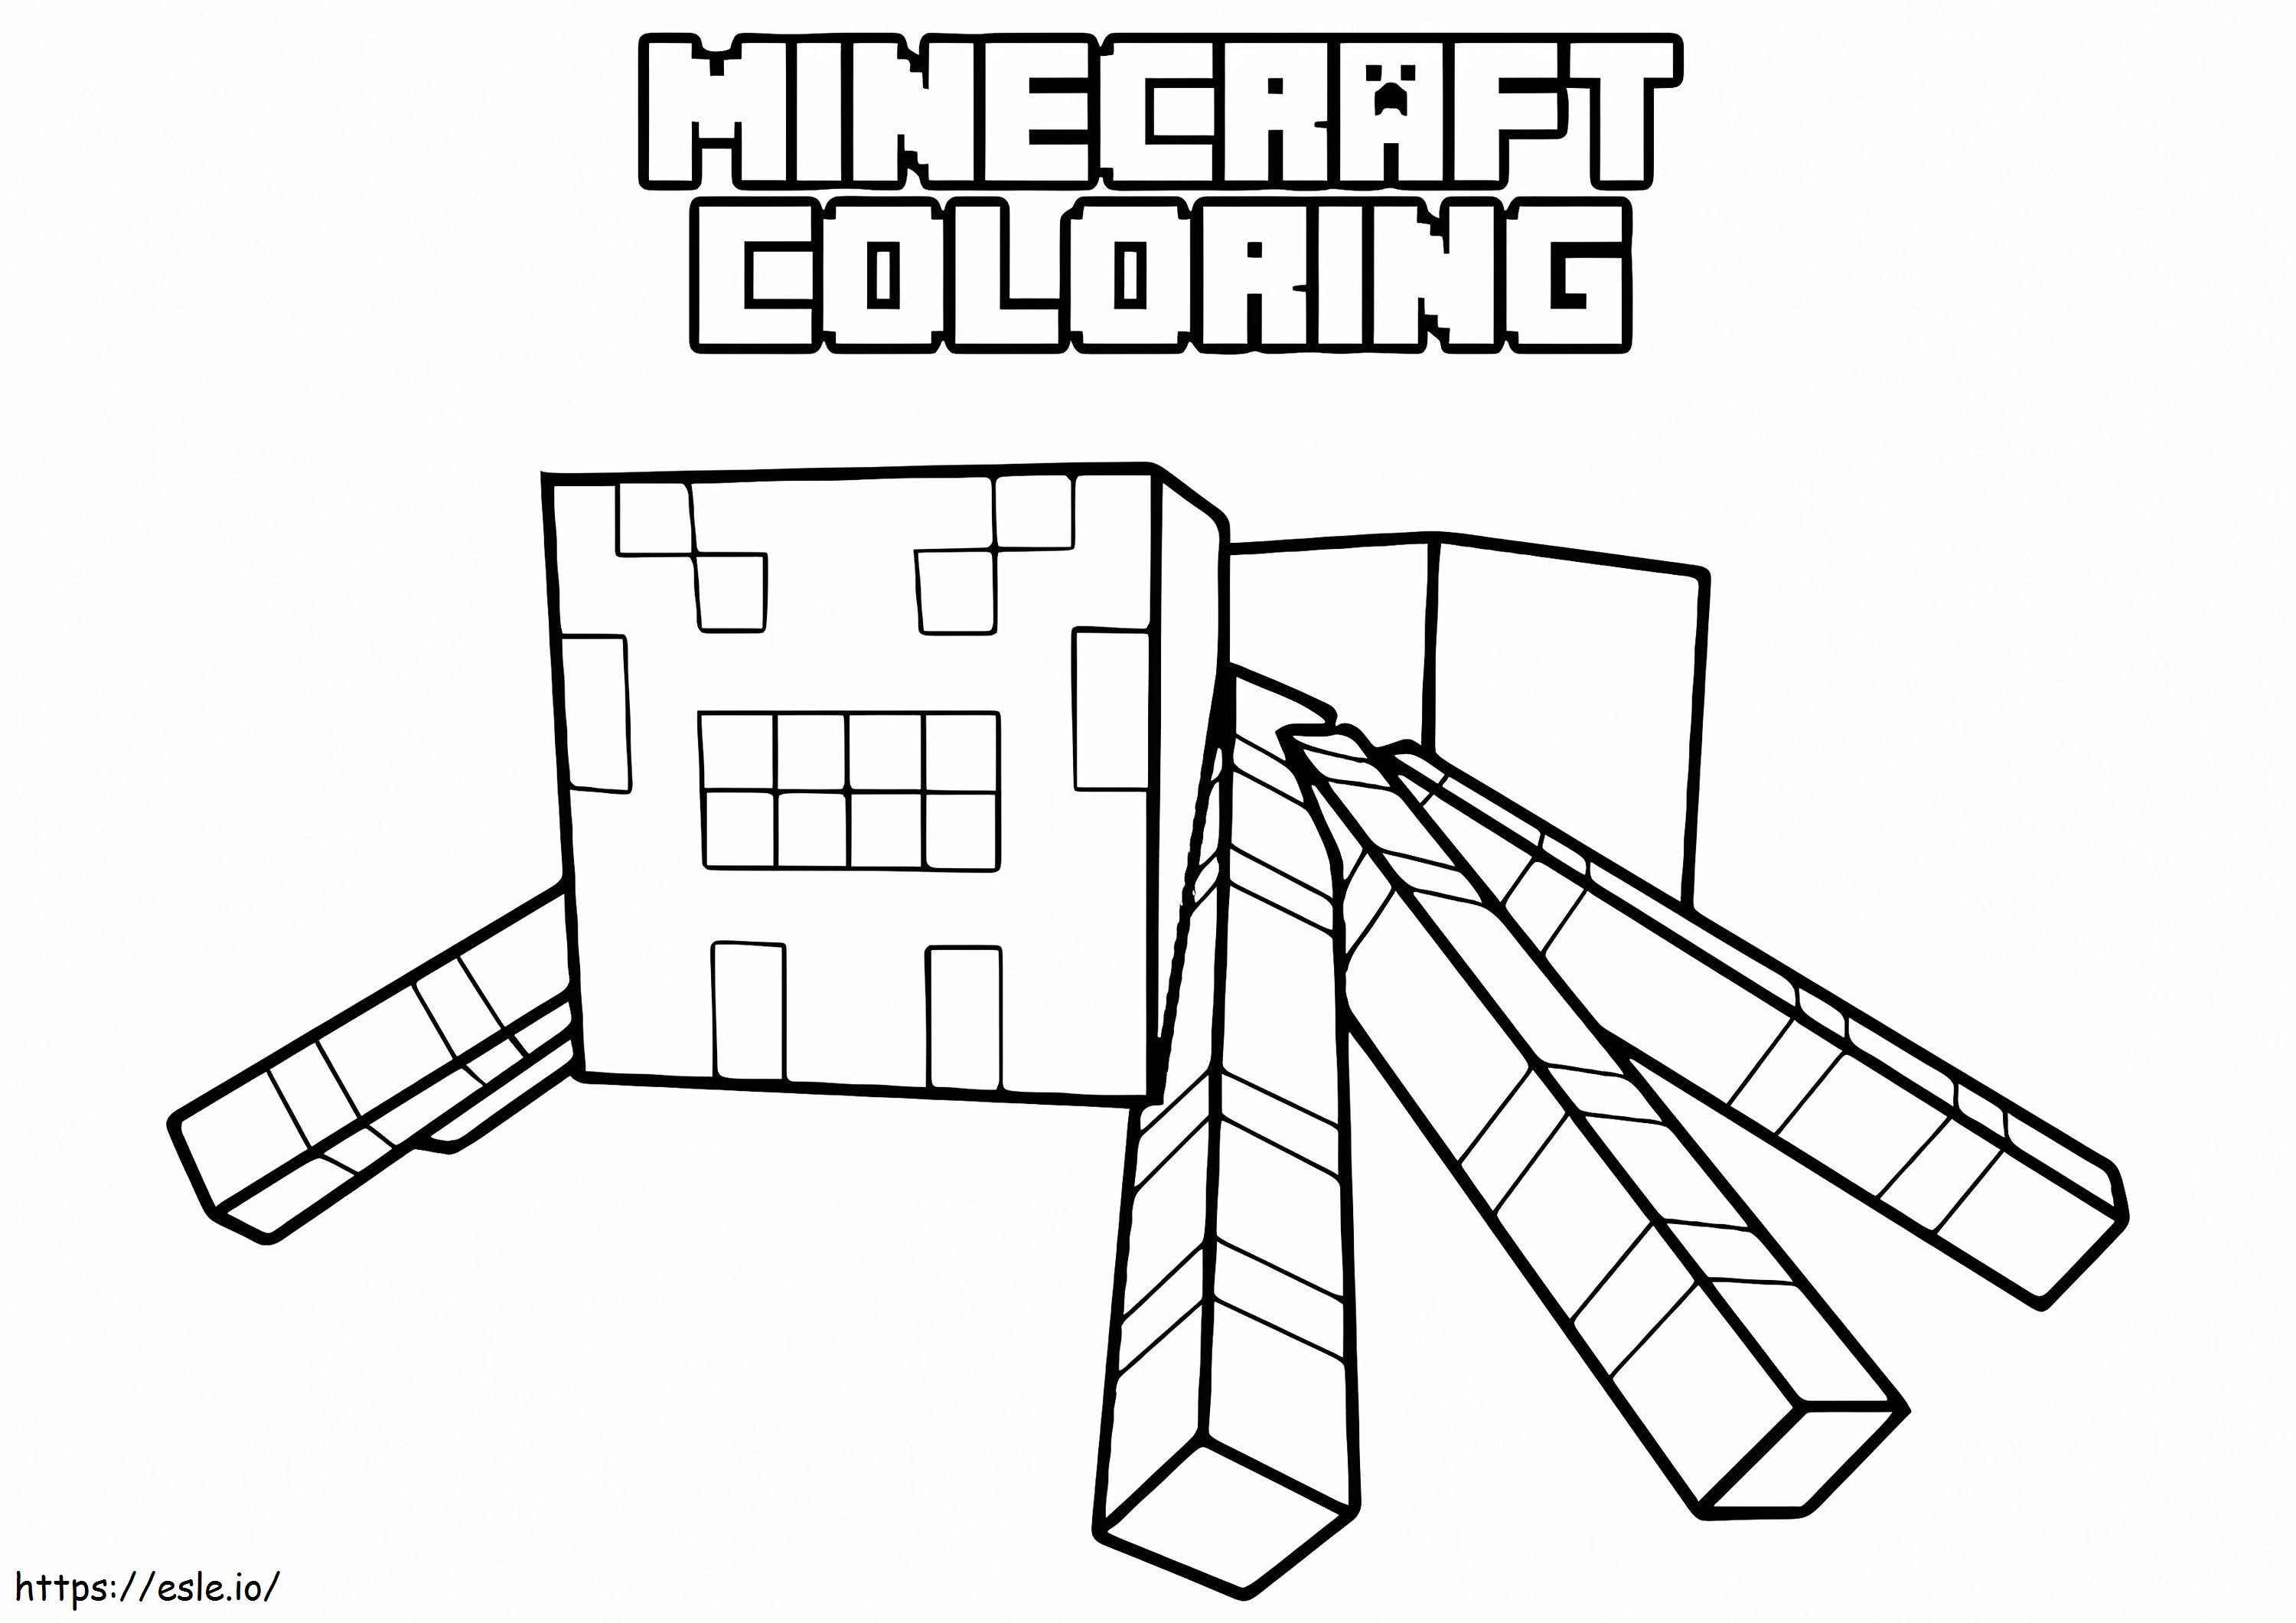 Coloriage Enfant Nhe1Bb87N dans Minecraft E1607109854762 à imprimer dessin